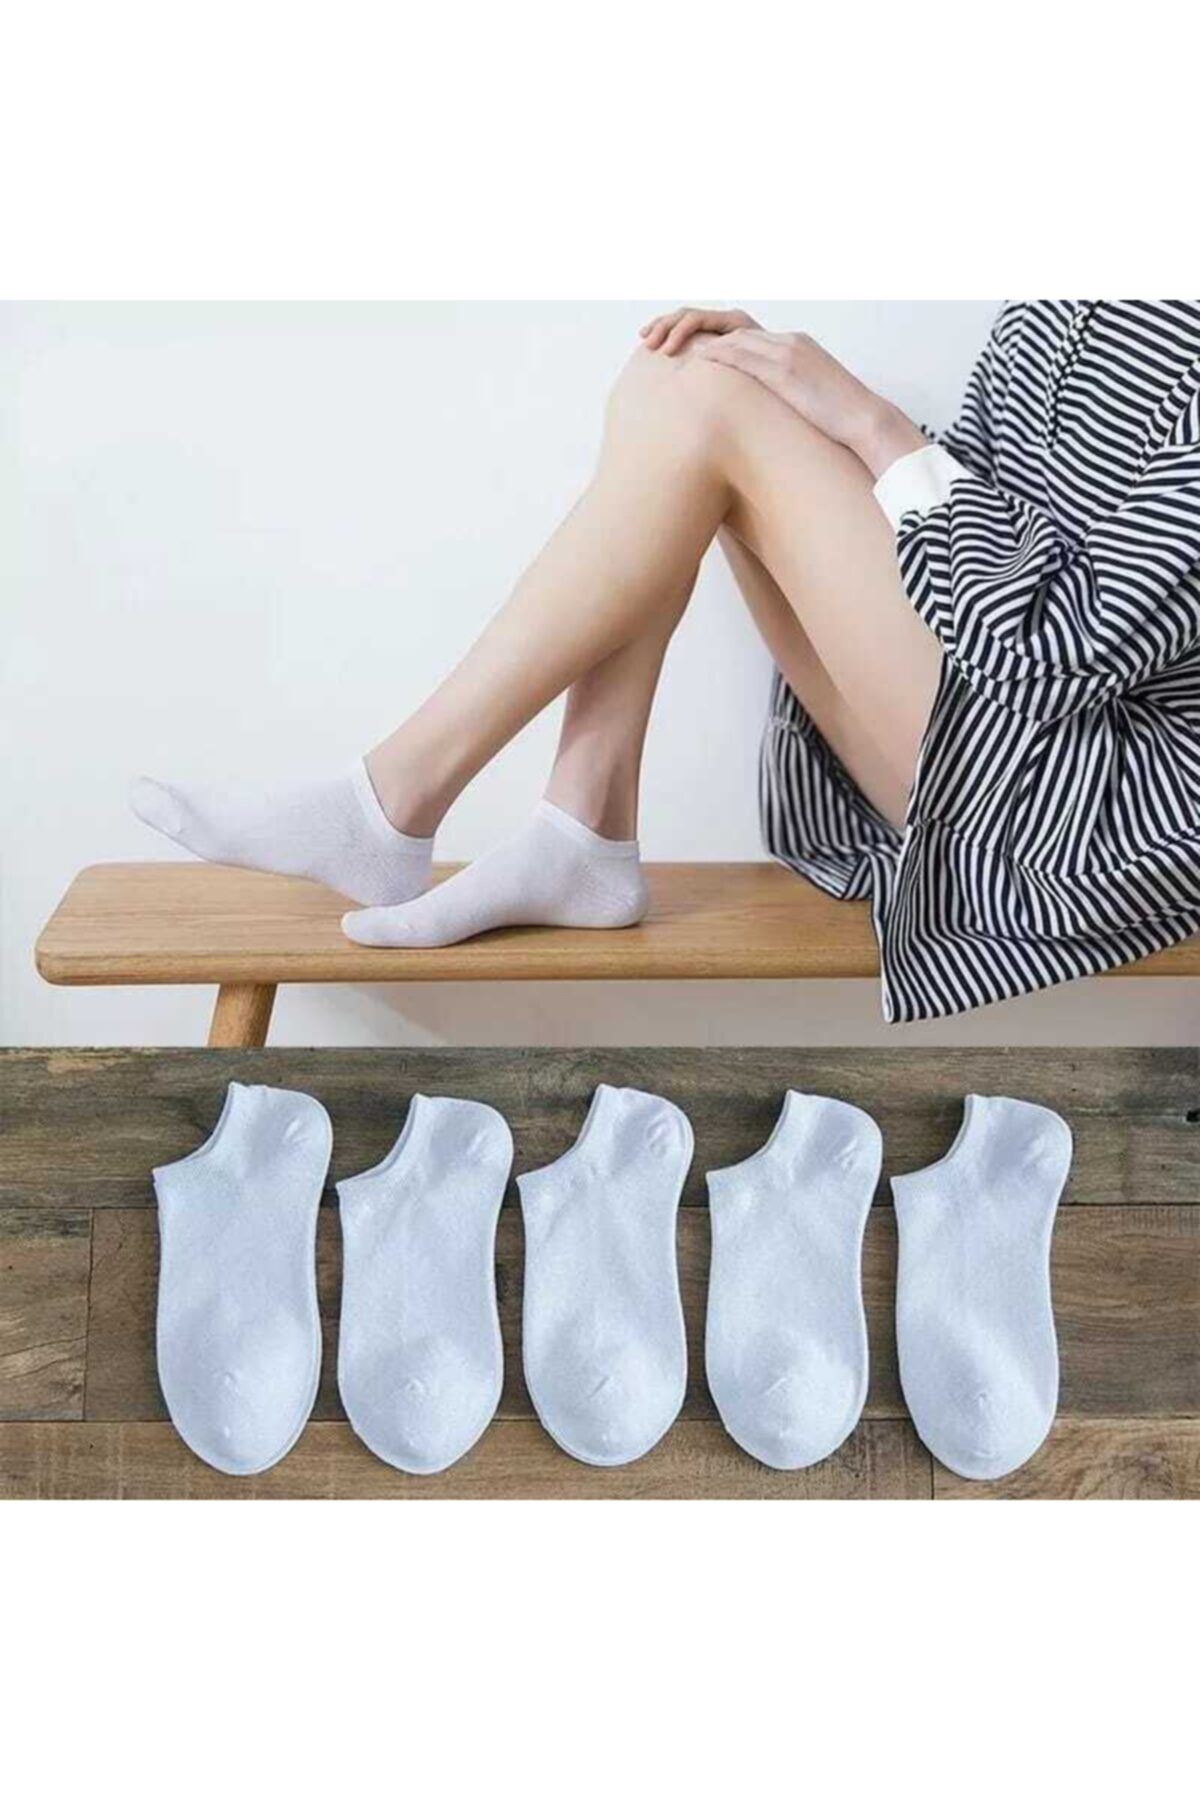 çorapkolik 5 Çift Beyaz Bilek Çorap